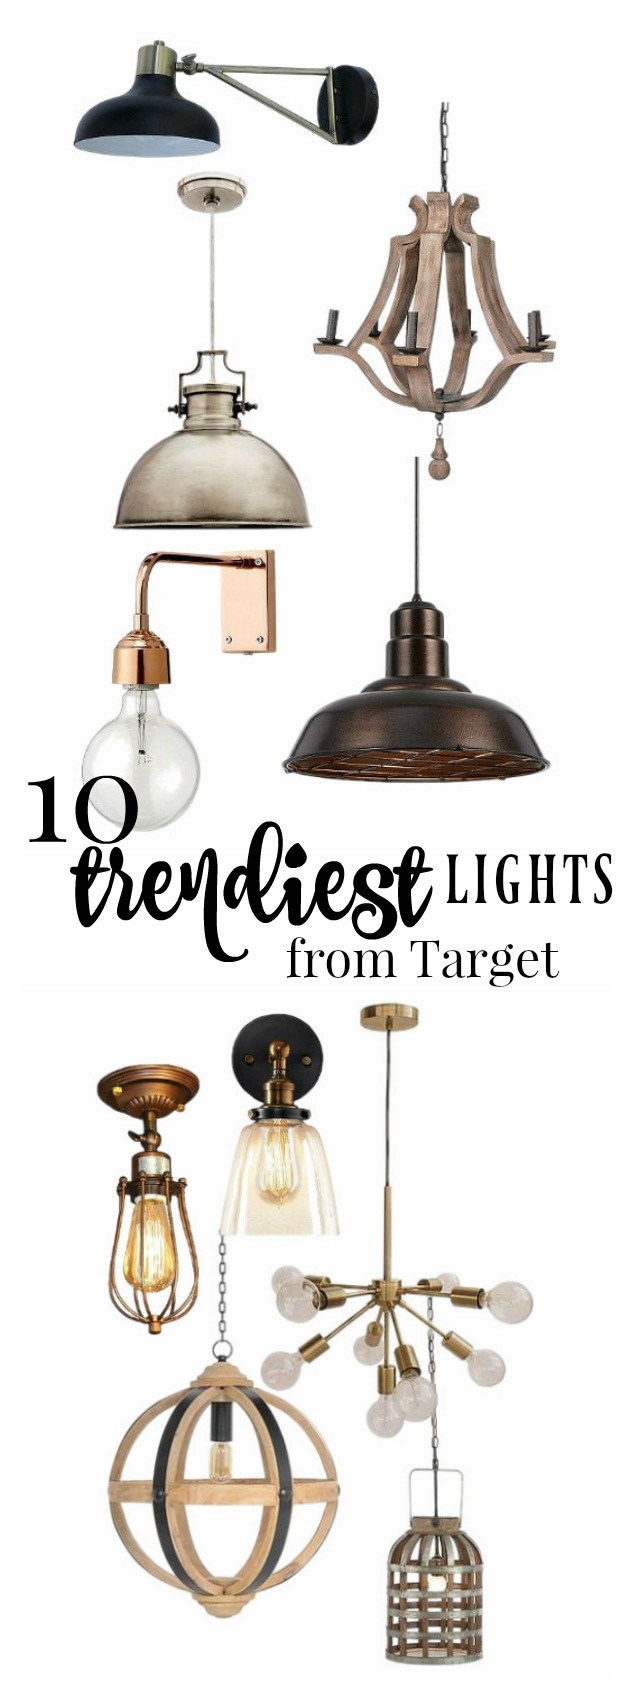 Top 10 Trendiest Lights from Target